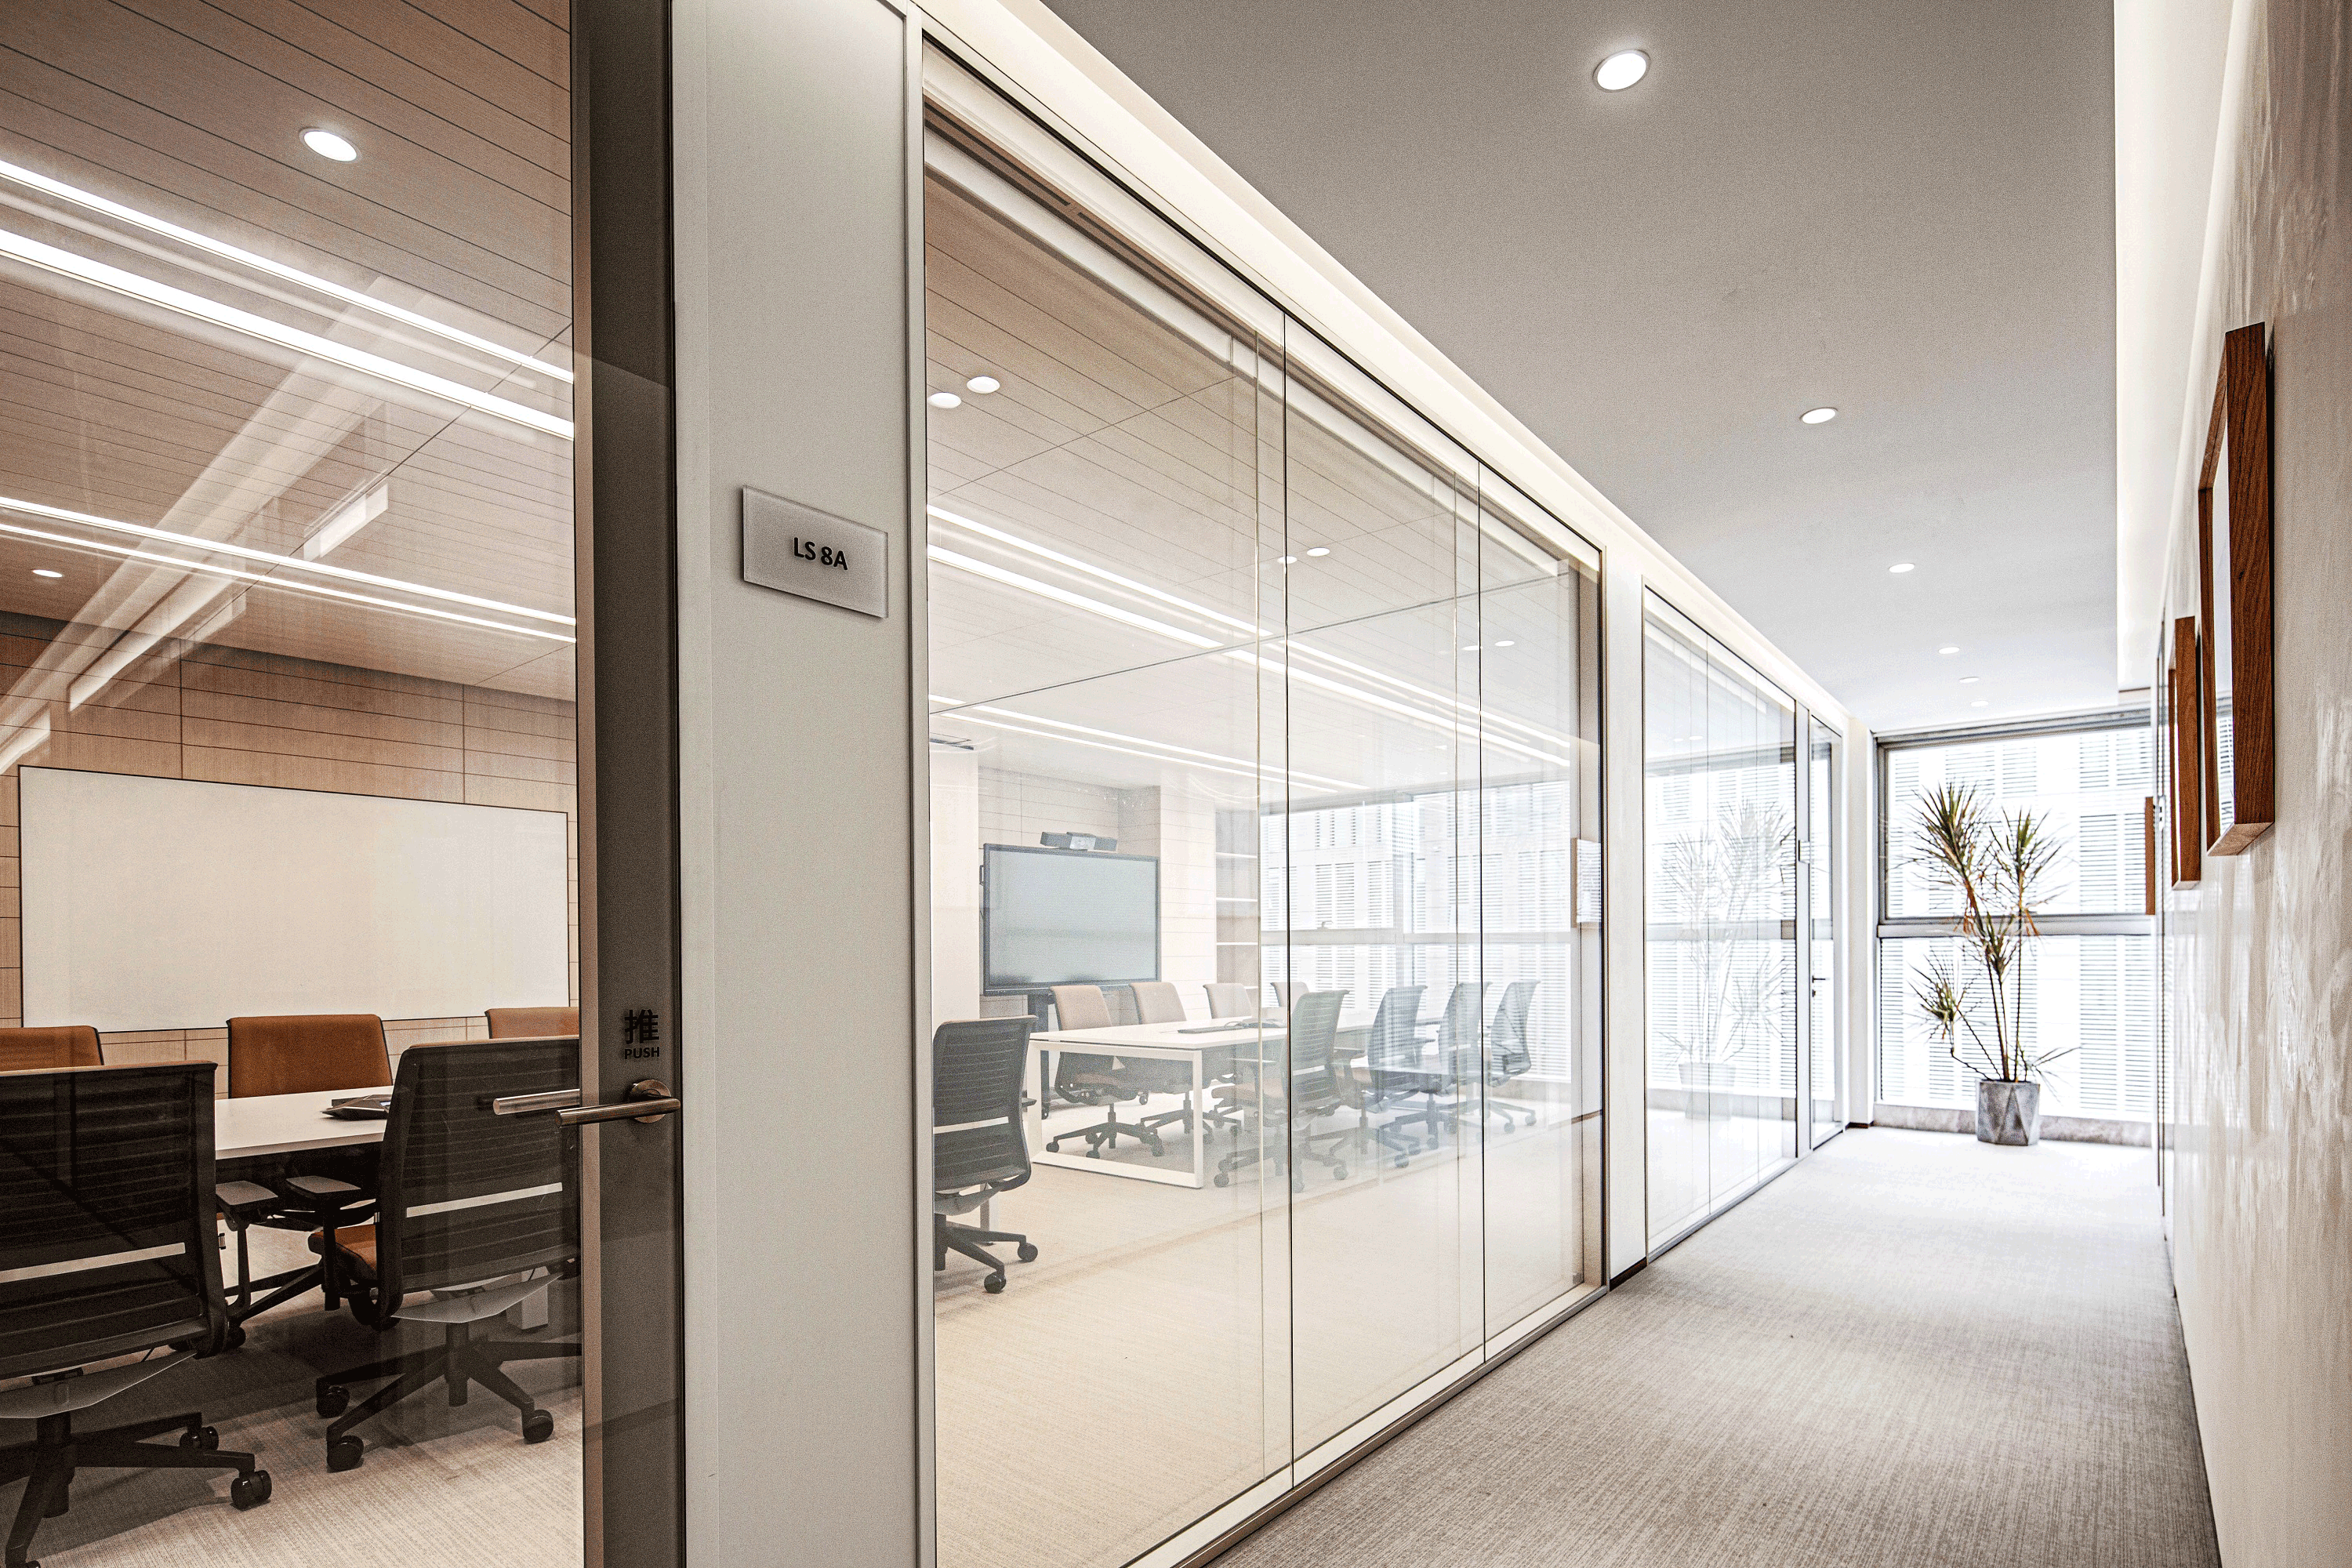 柳沈律师事务所室内办公空间  室内改造设计 / CCDI 智室内设计